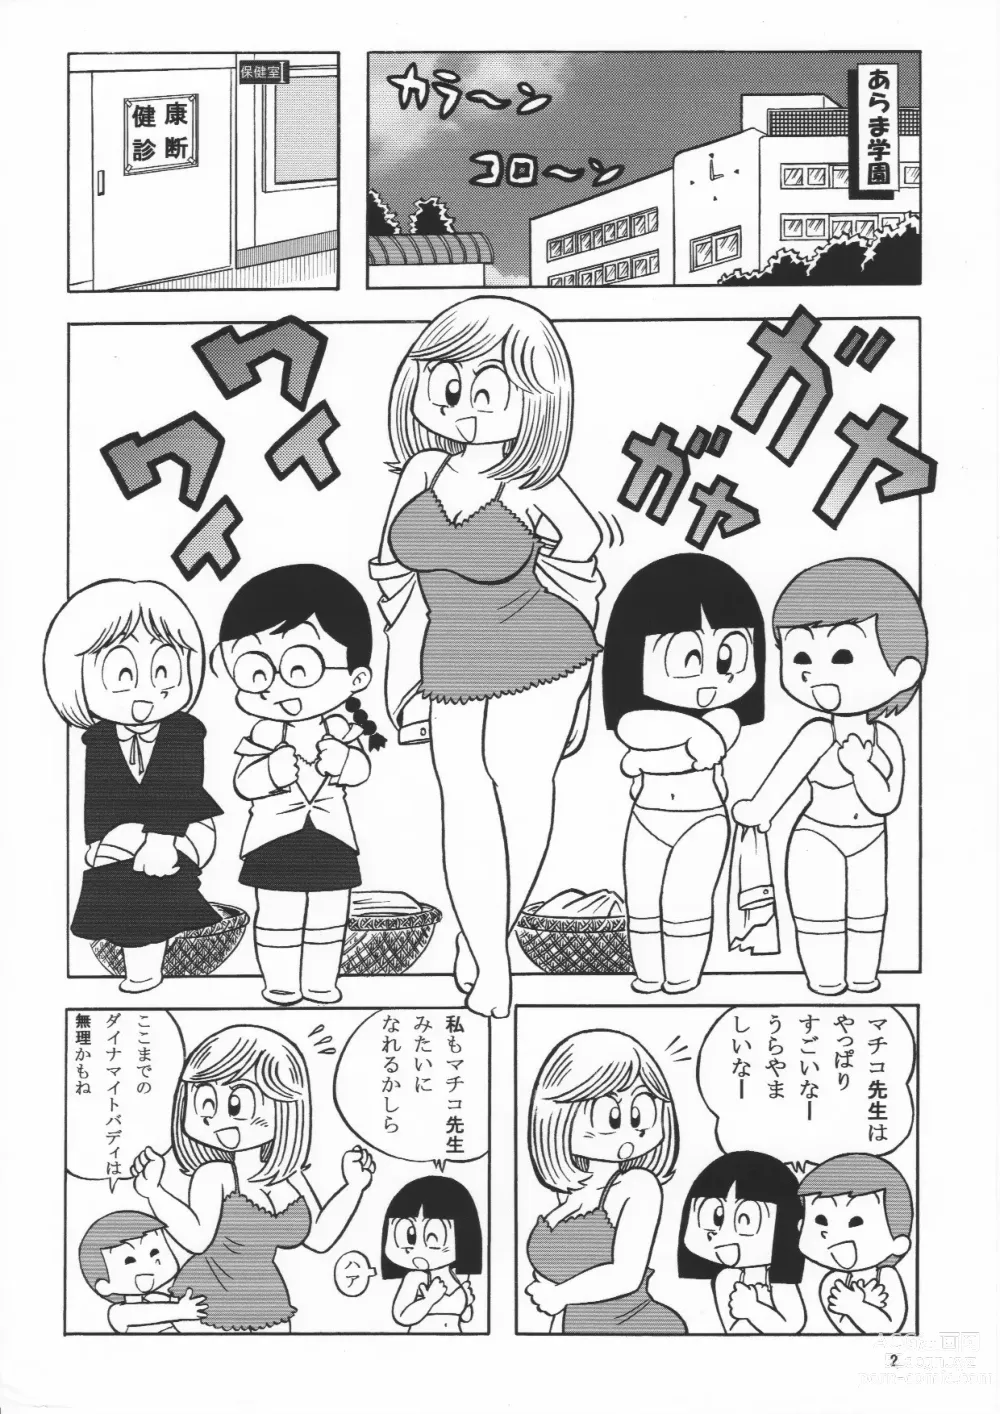 Page 2 of doujinshi (Maicching Machiko Sensei)